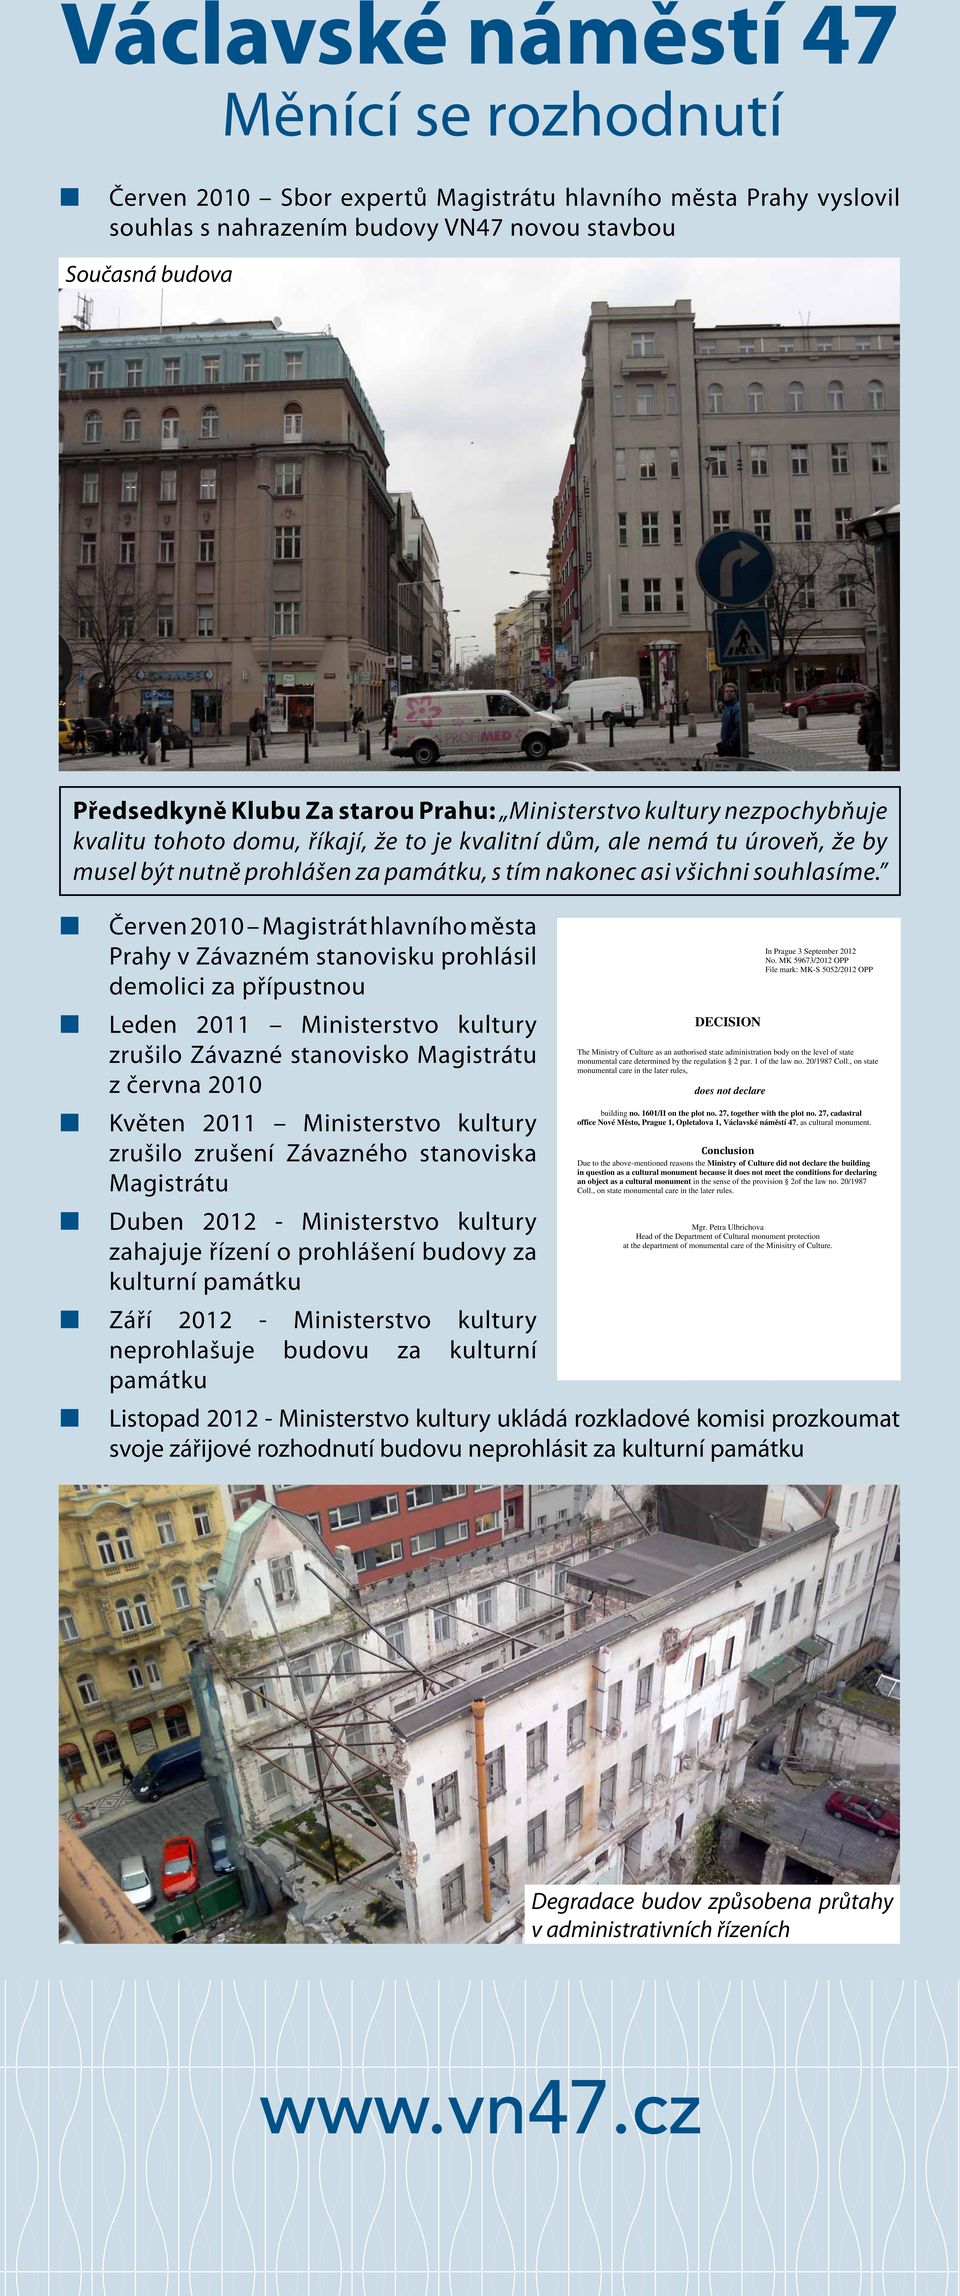 Červen 2010 Magistrát hlavního města Prahy v Závazném stanovisku prohlásil demolici za přípustnou In Prague 3 September 2012 No.